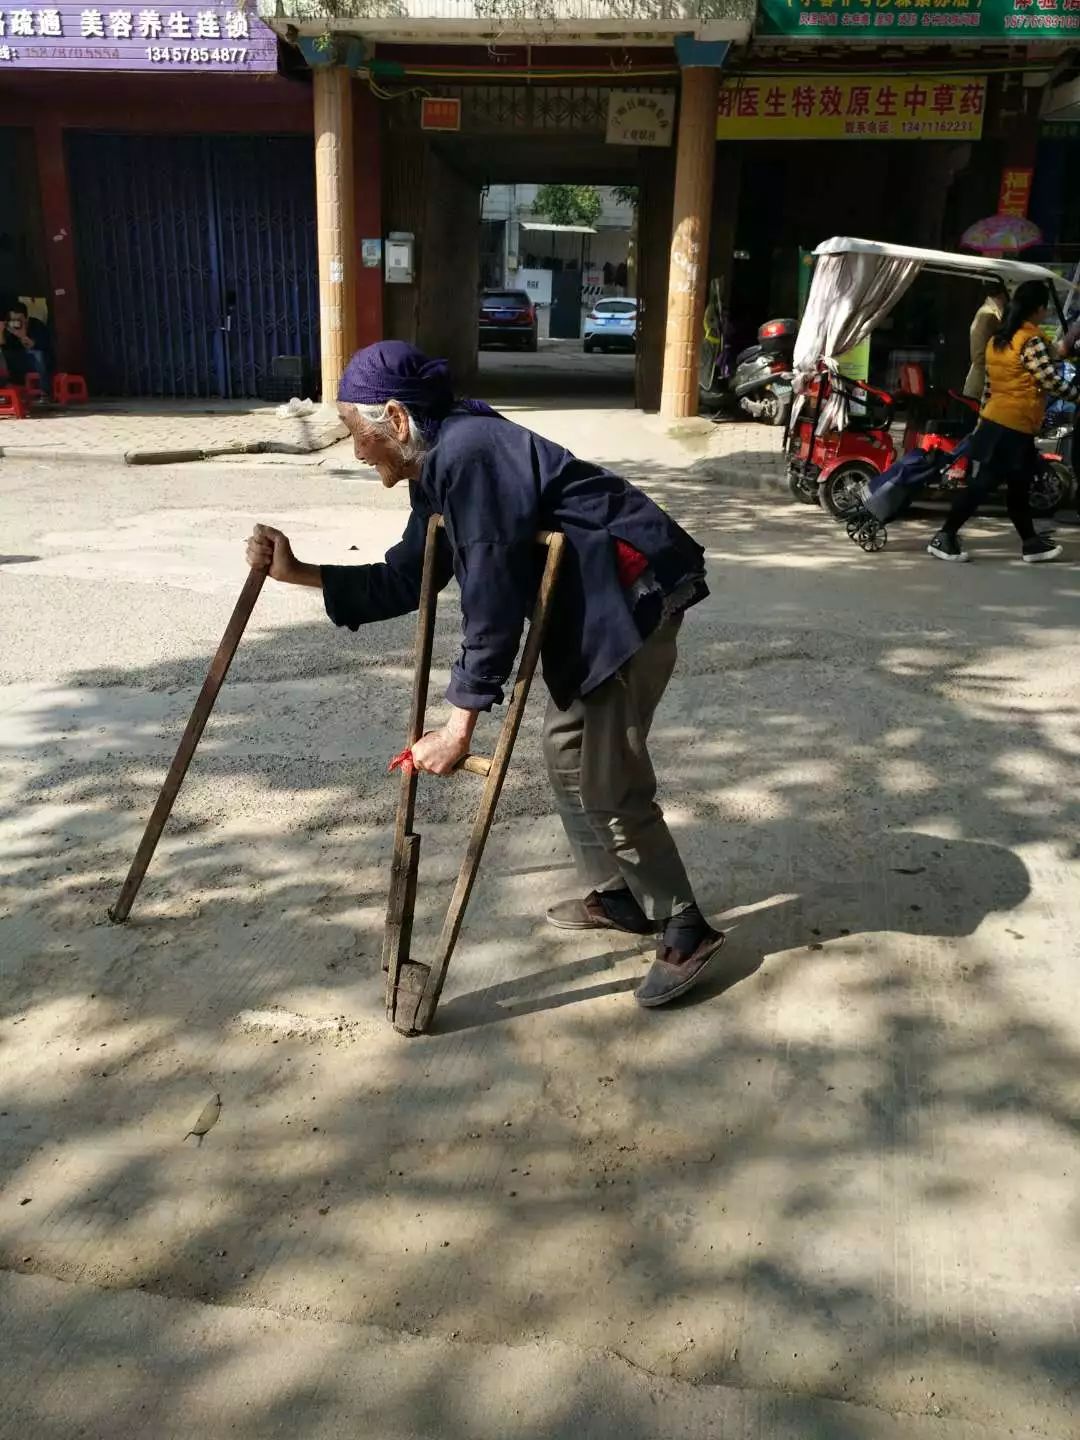 老奶奶一个人拄着两根拐杖缓慢地在路上艰难的行走着,真怕她一不小心